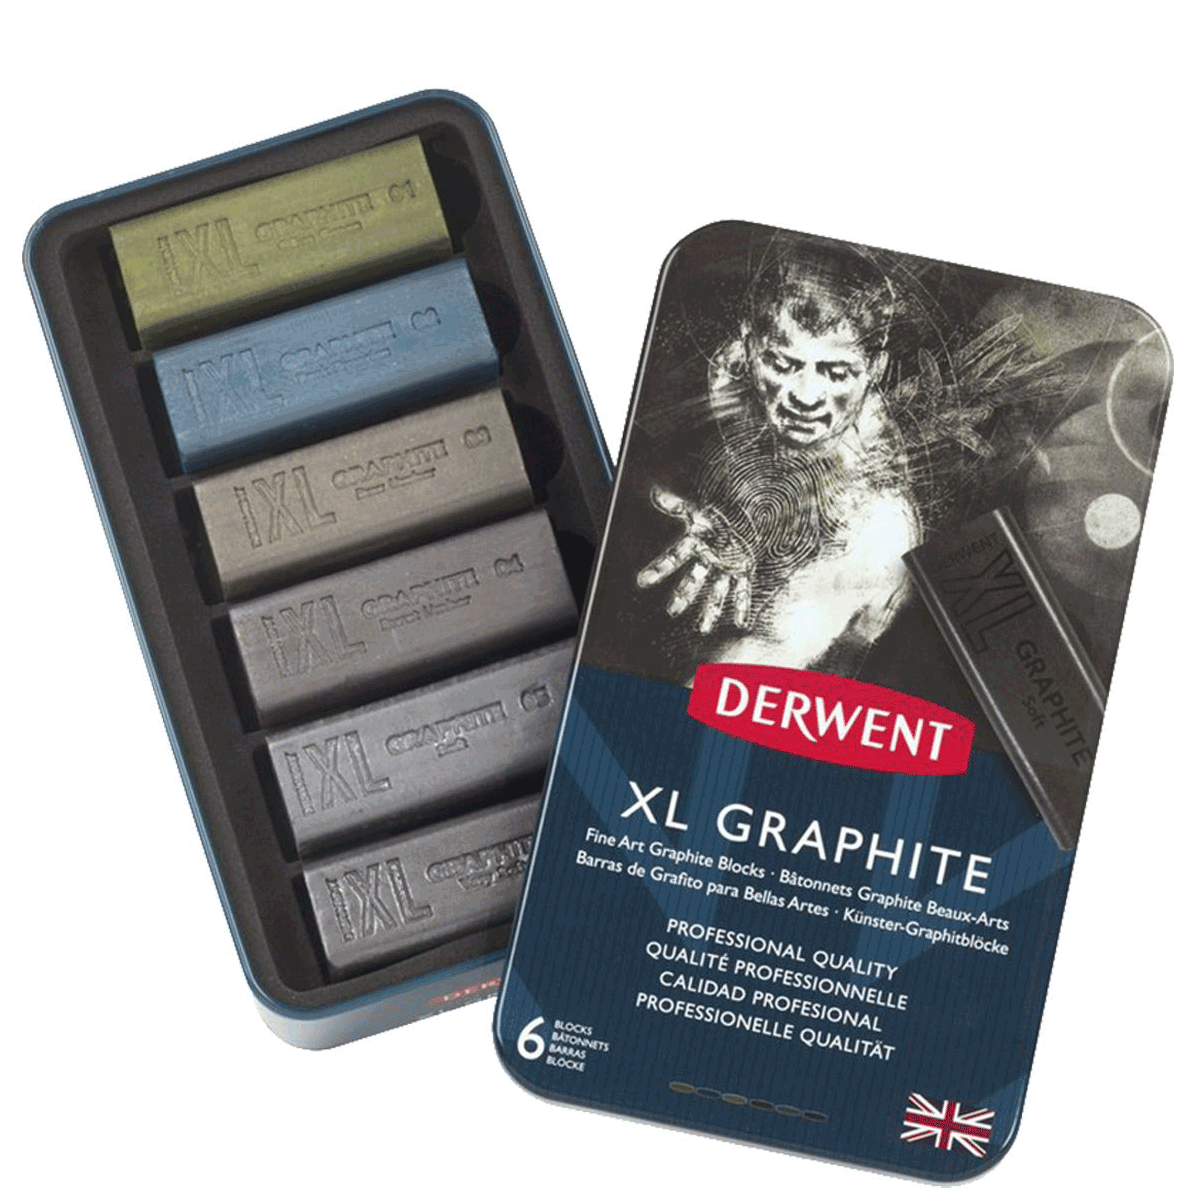 Derwent XL Graphite Blocks, Tin Set 6 pc